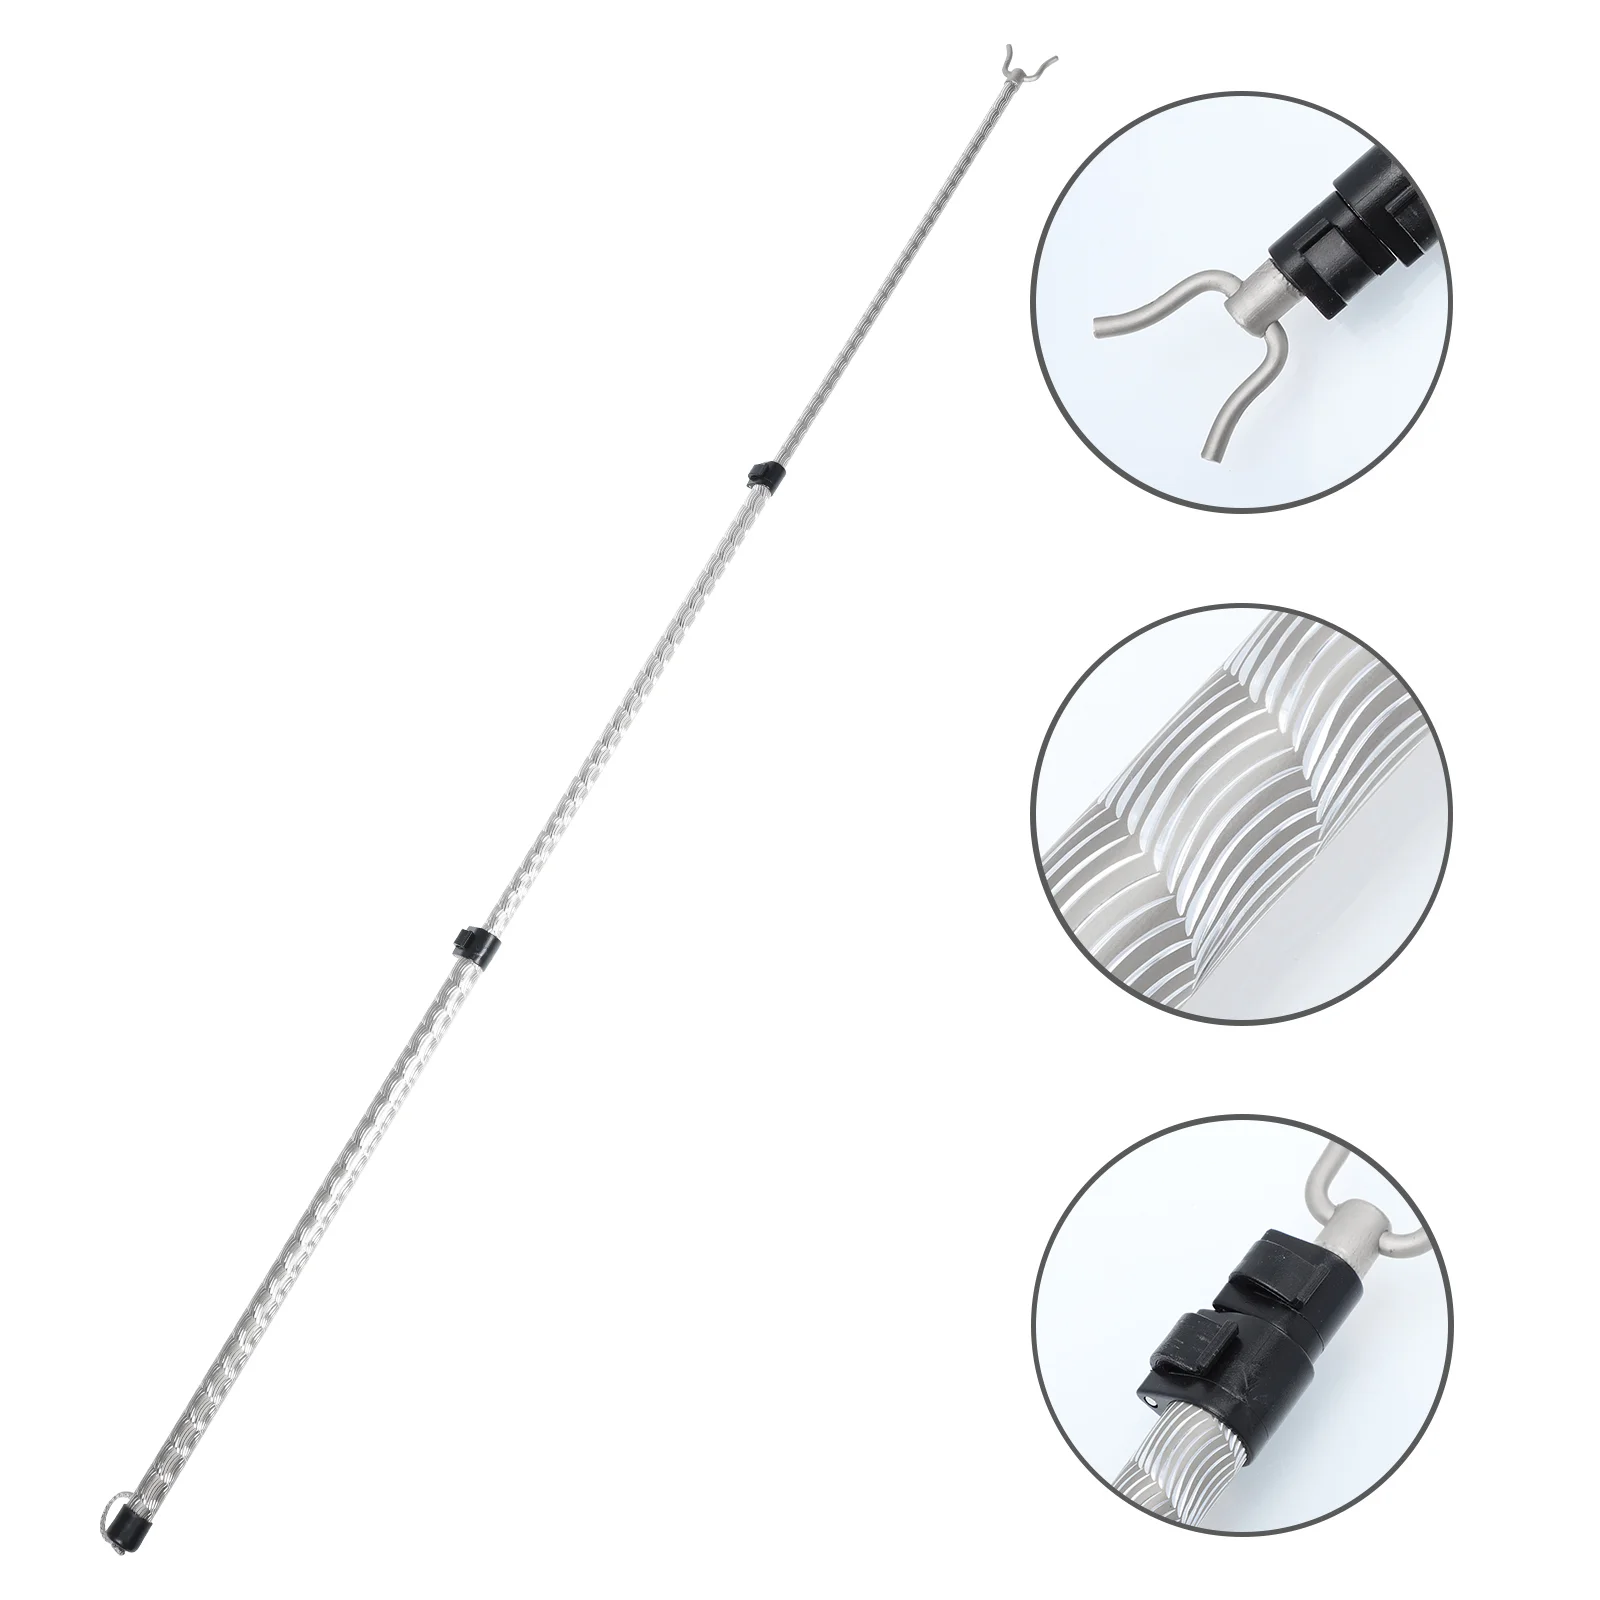 

Aluminium Alloy Telescopic Handle Clothing Hook Pole Laundry Hanging Fork